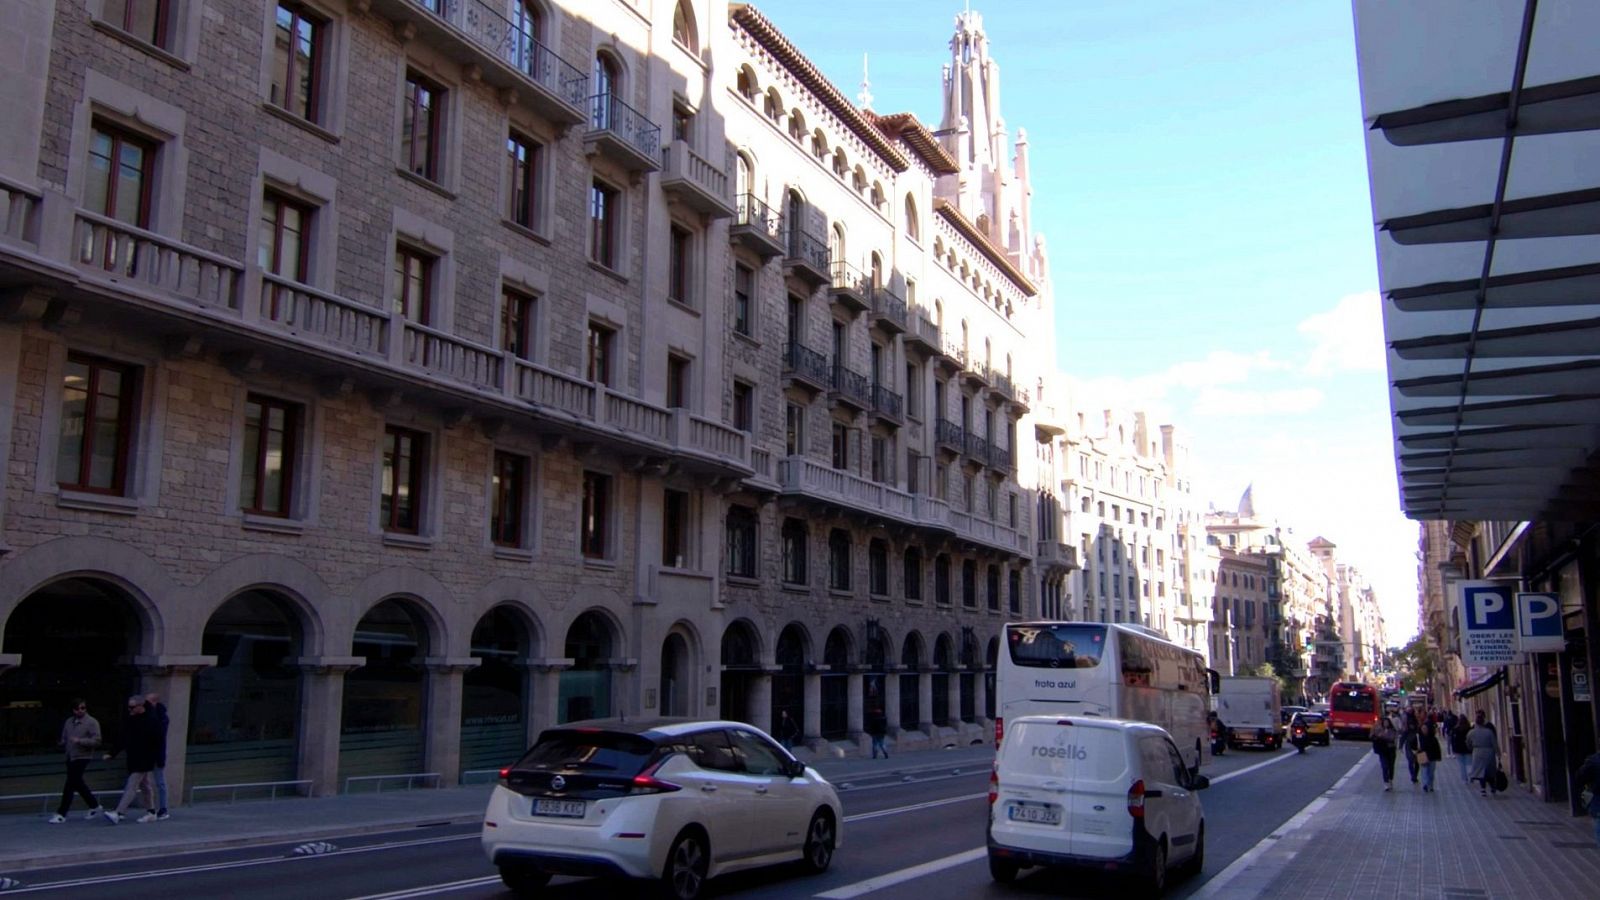 Aquests són els edificis més emblemàtics de la Via Laietana de Barcelona